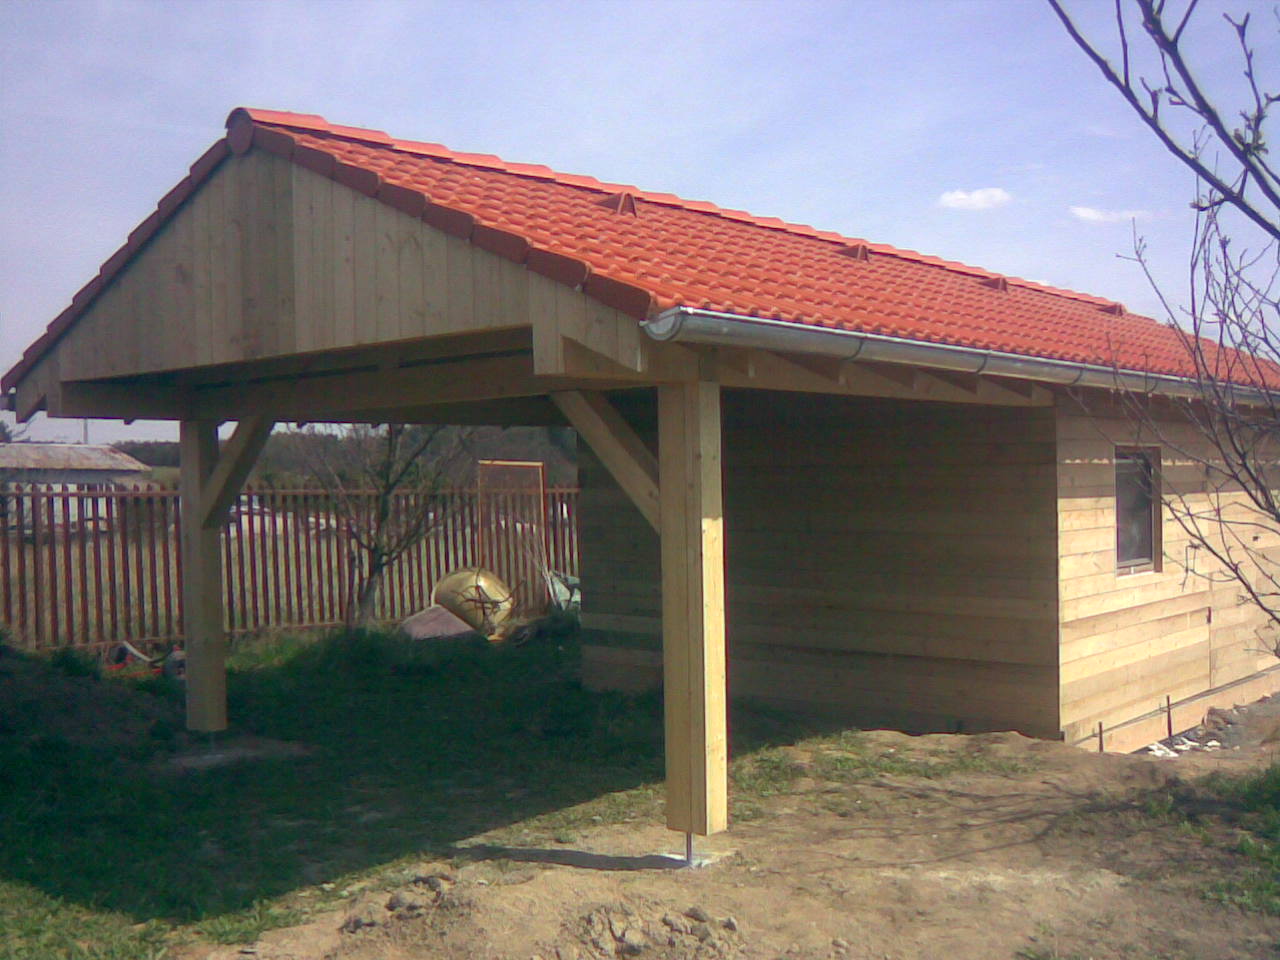   Oleško - zahradní chata, kryté stání